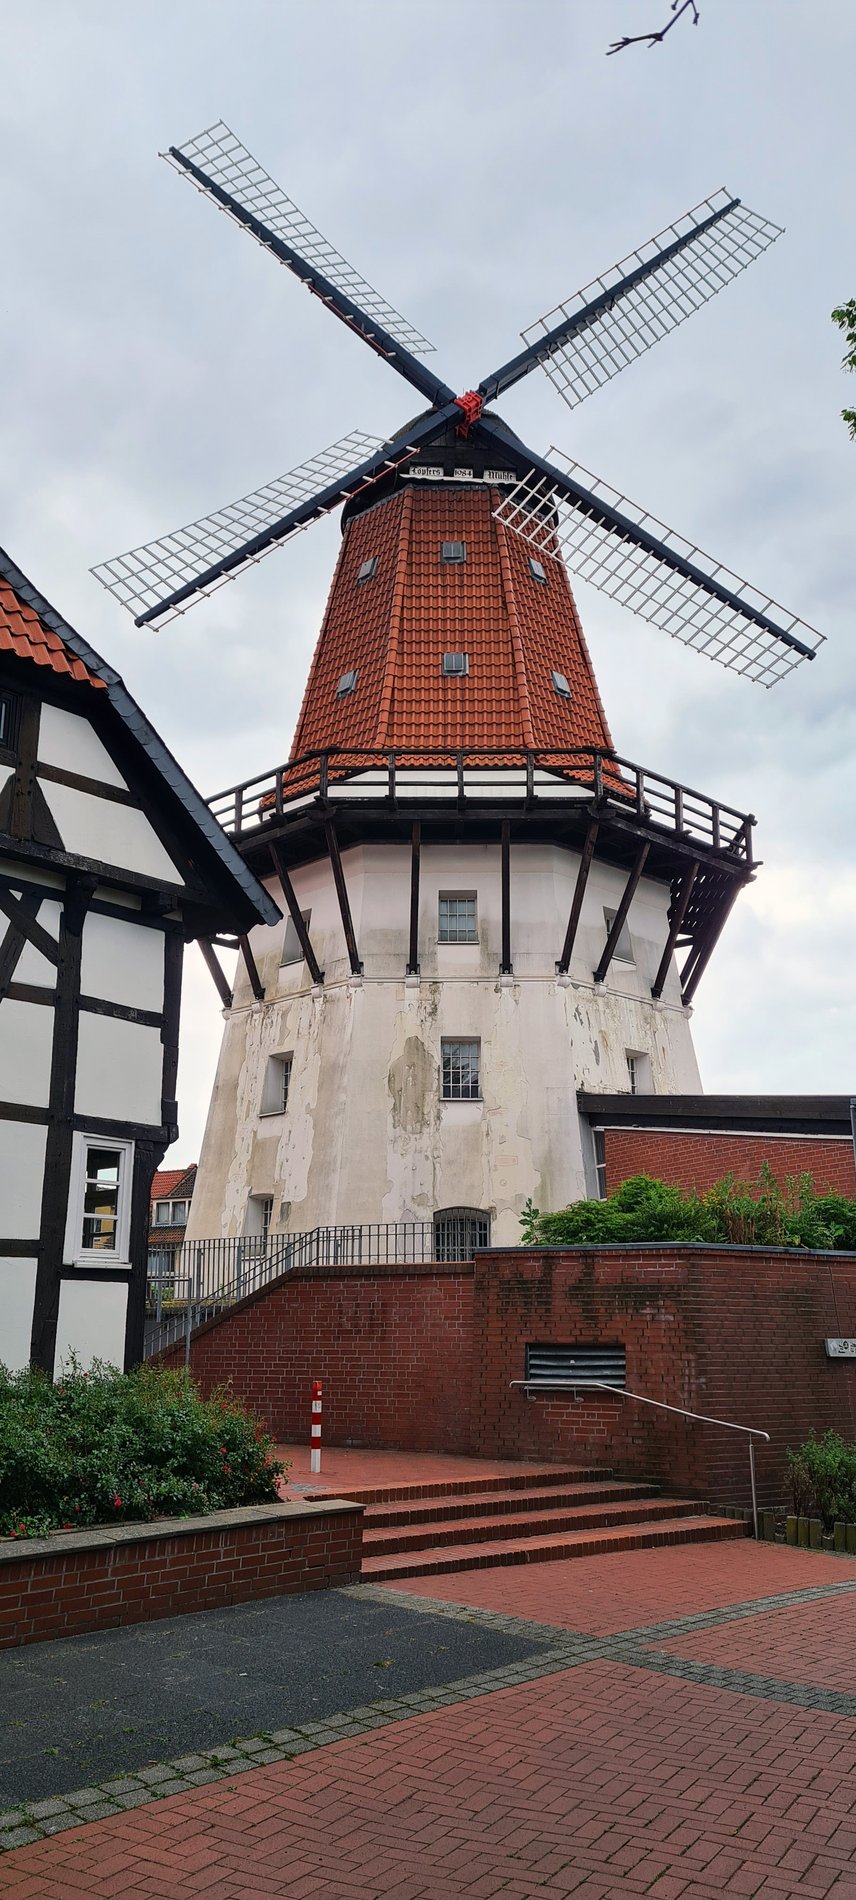 Man blickt auf eine Windmühle mit weißer Fassade und roten Dachziegeln. Auf mitte der Bauhöhe verläuft rings um die Windmühle ein Holzbalkon.